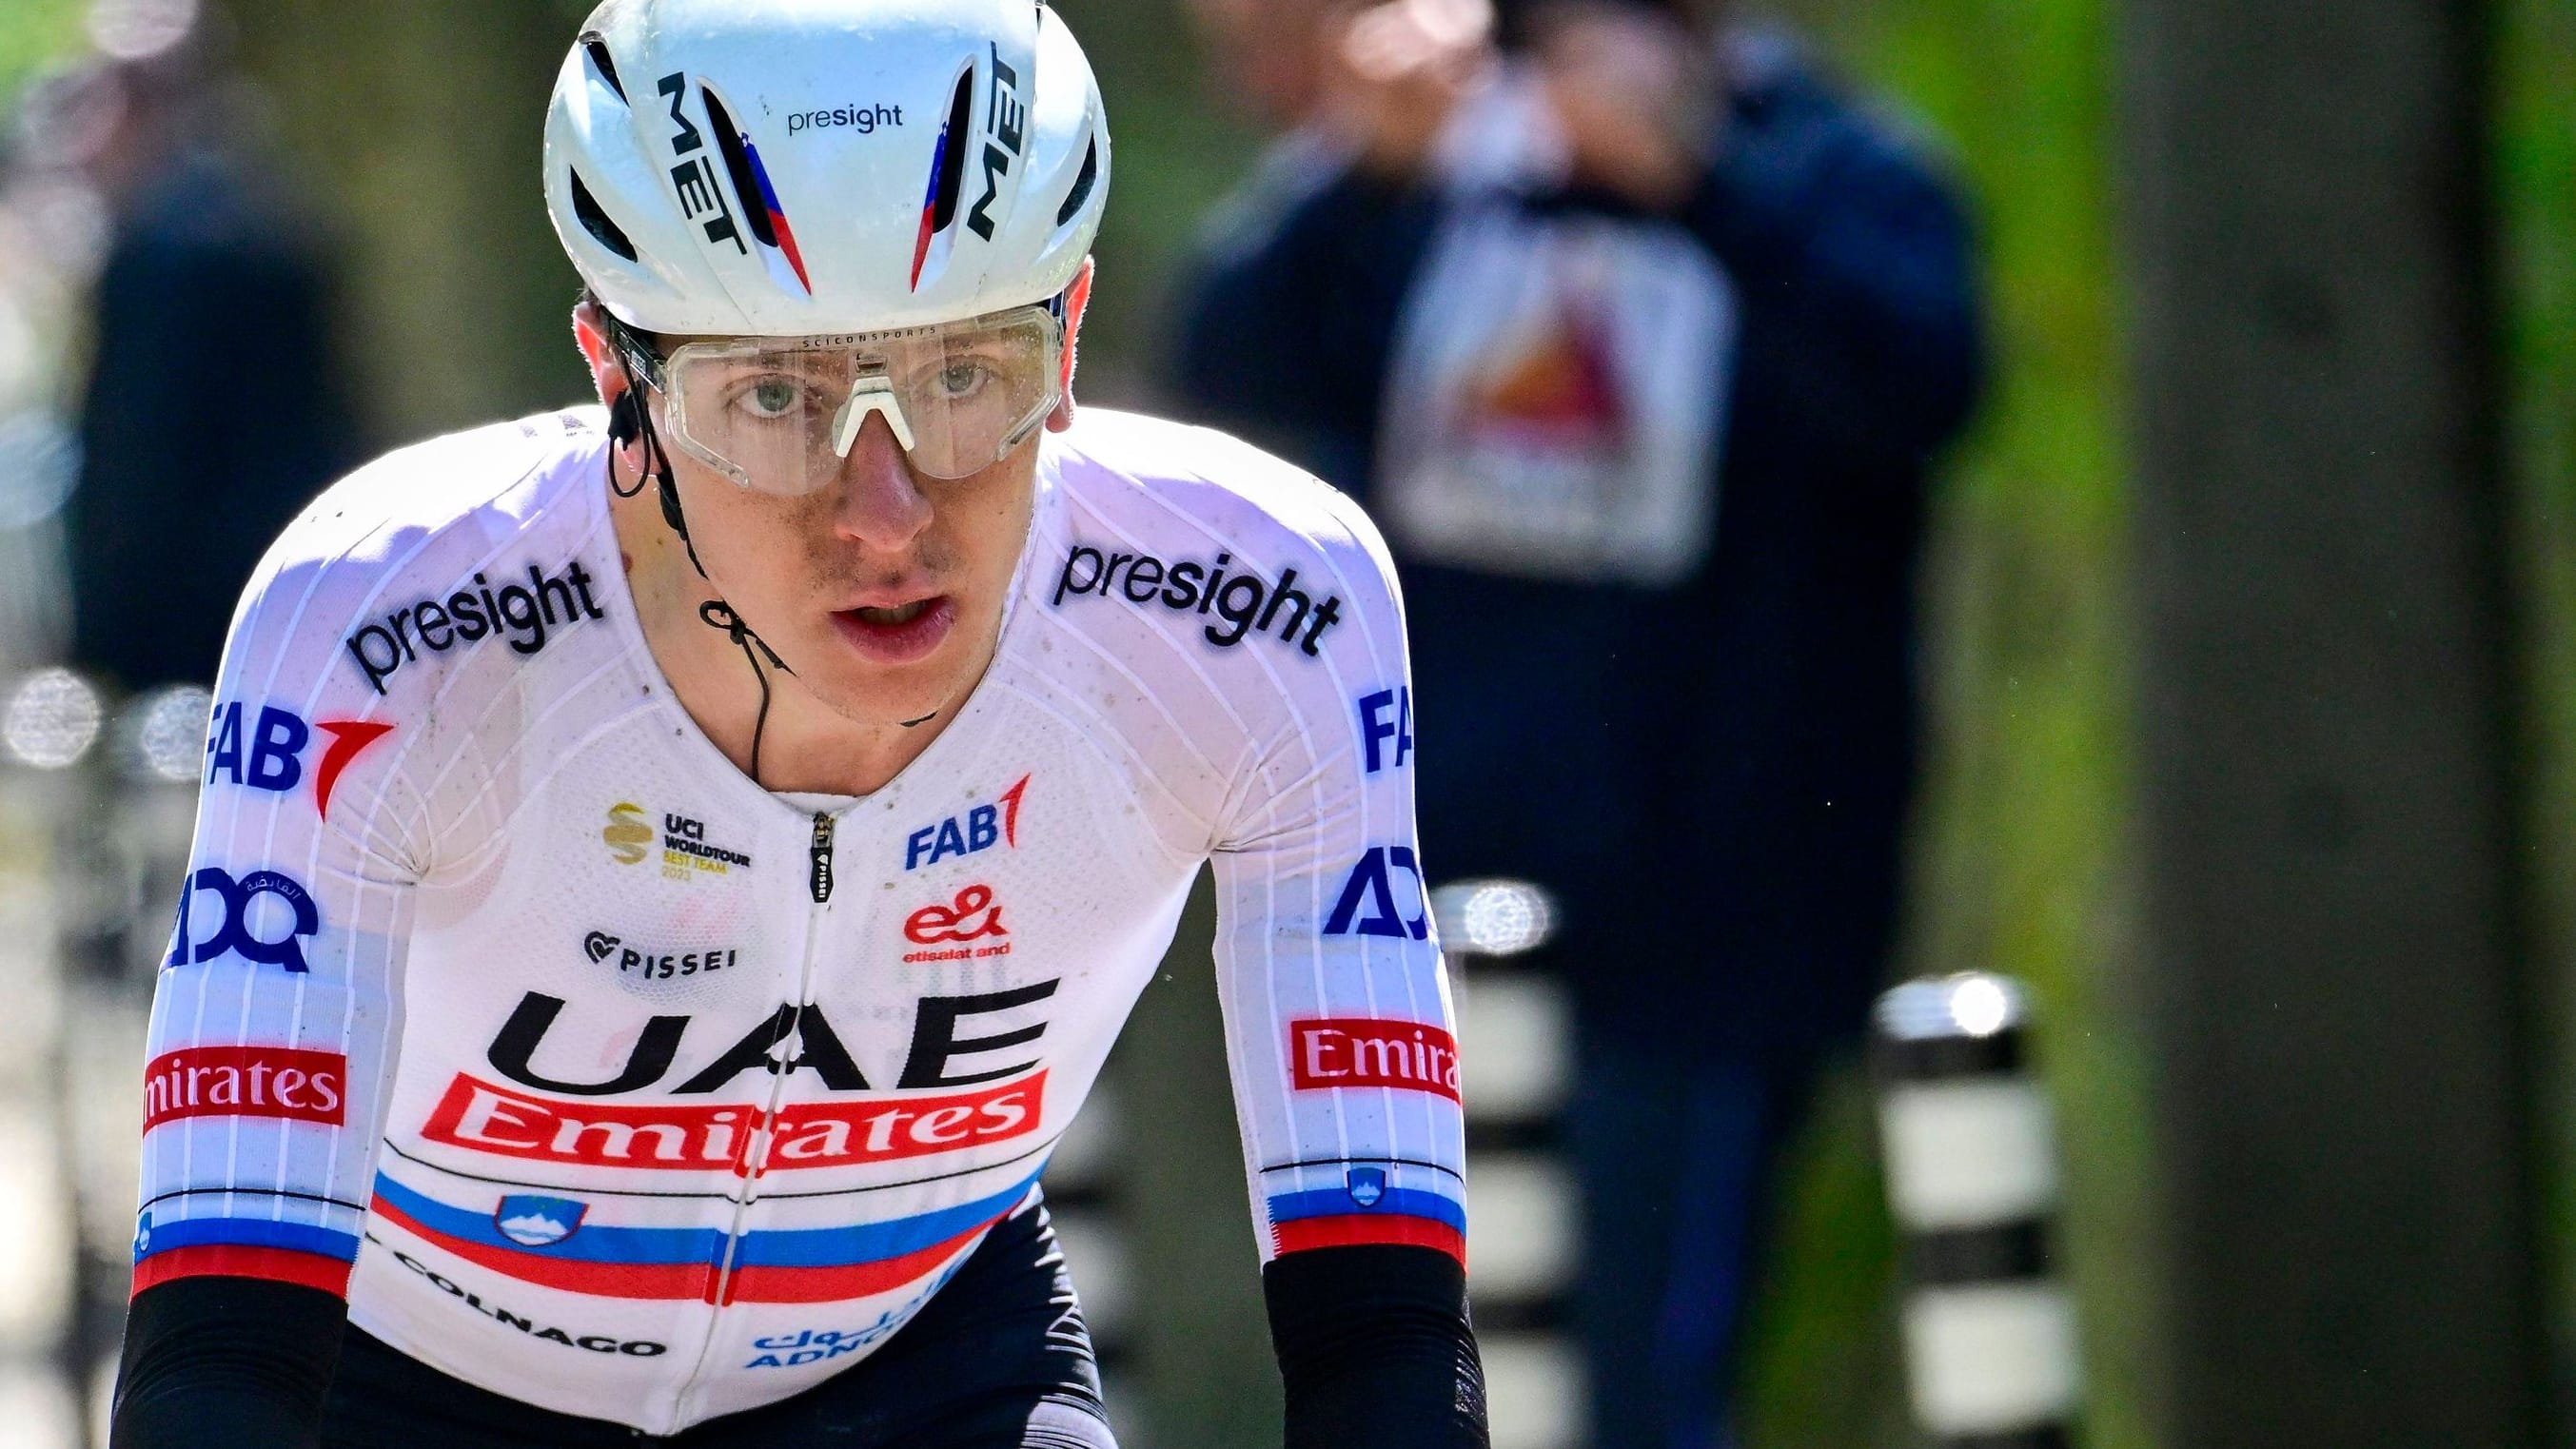 Radsport-Star Pogačar vor Tour de France über 